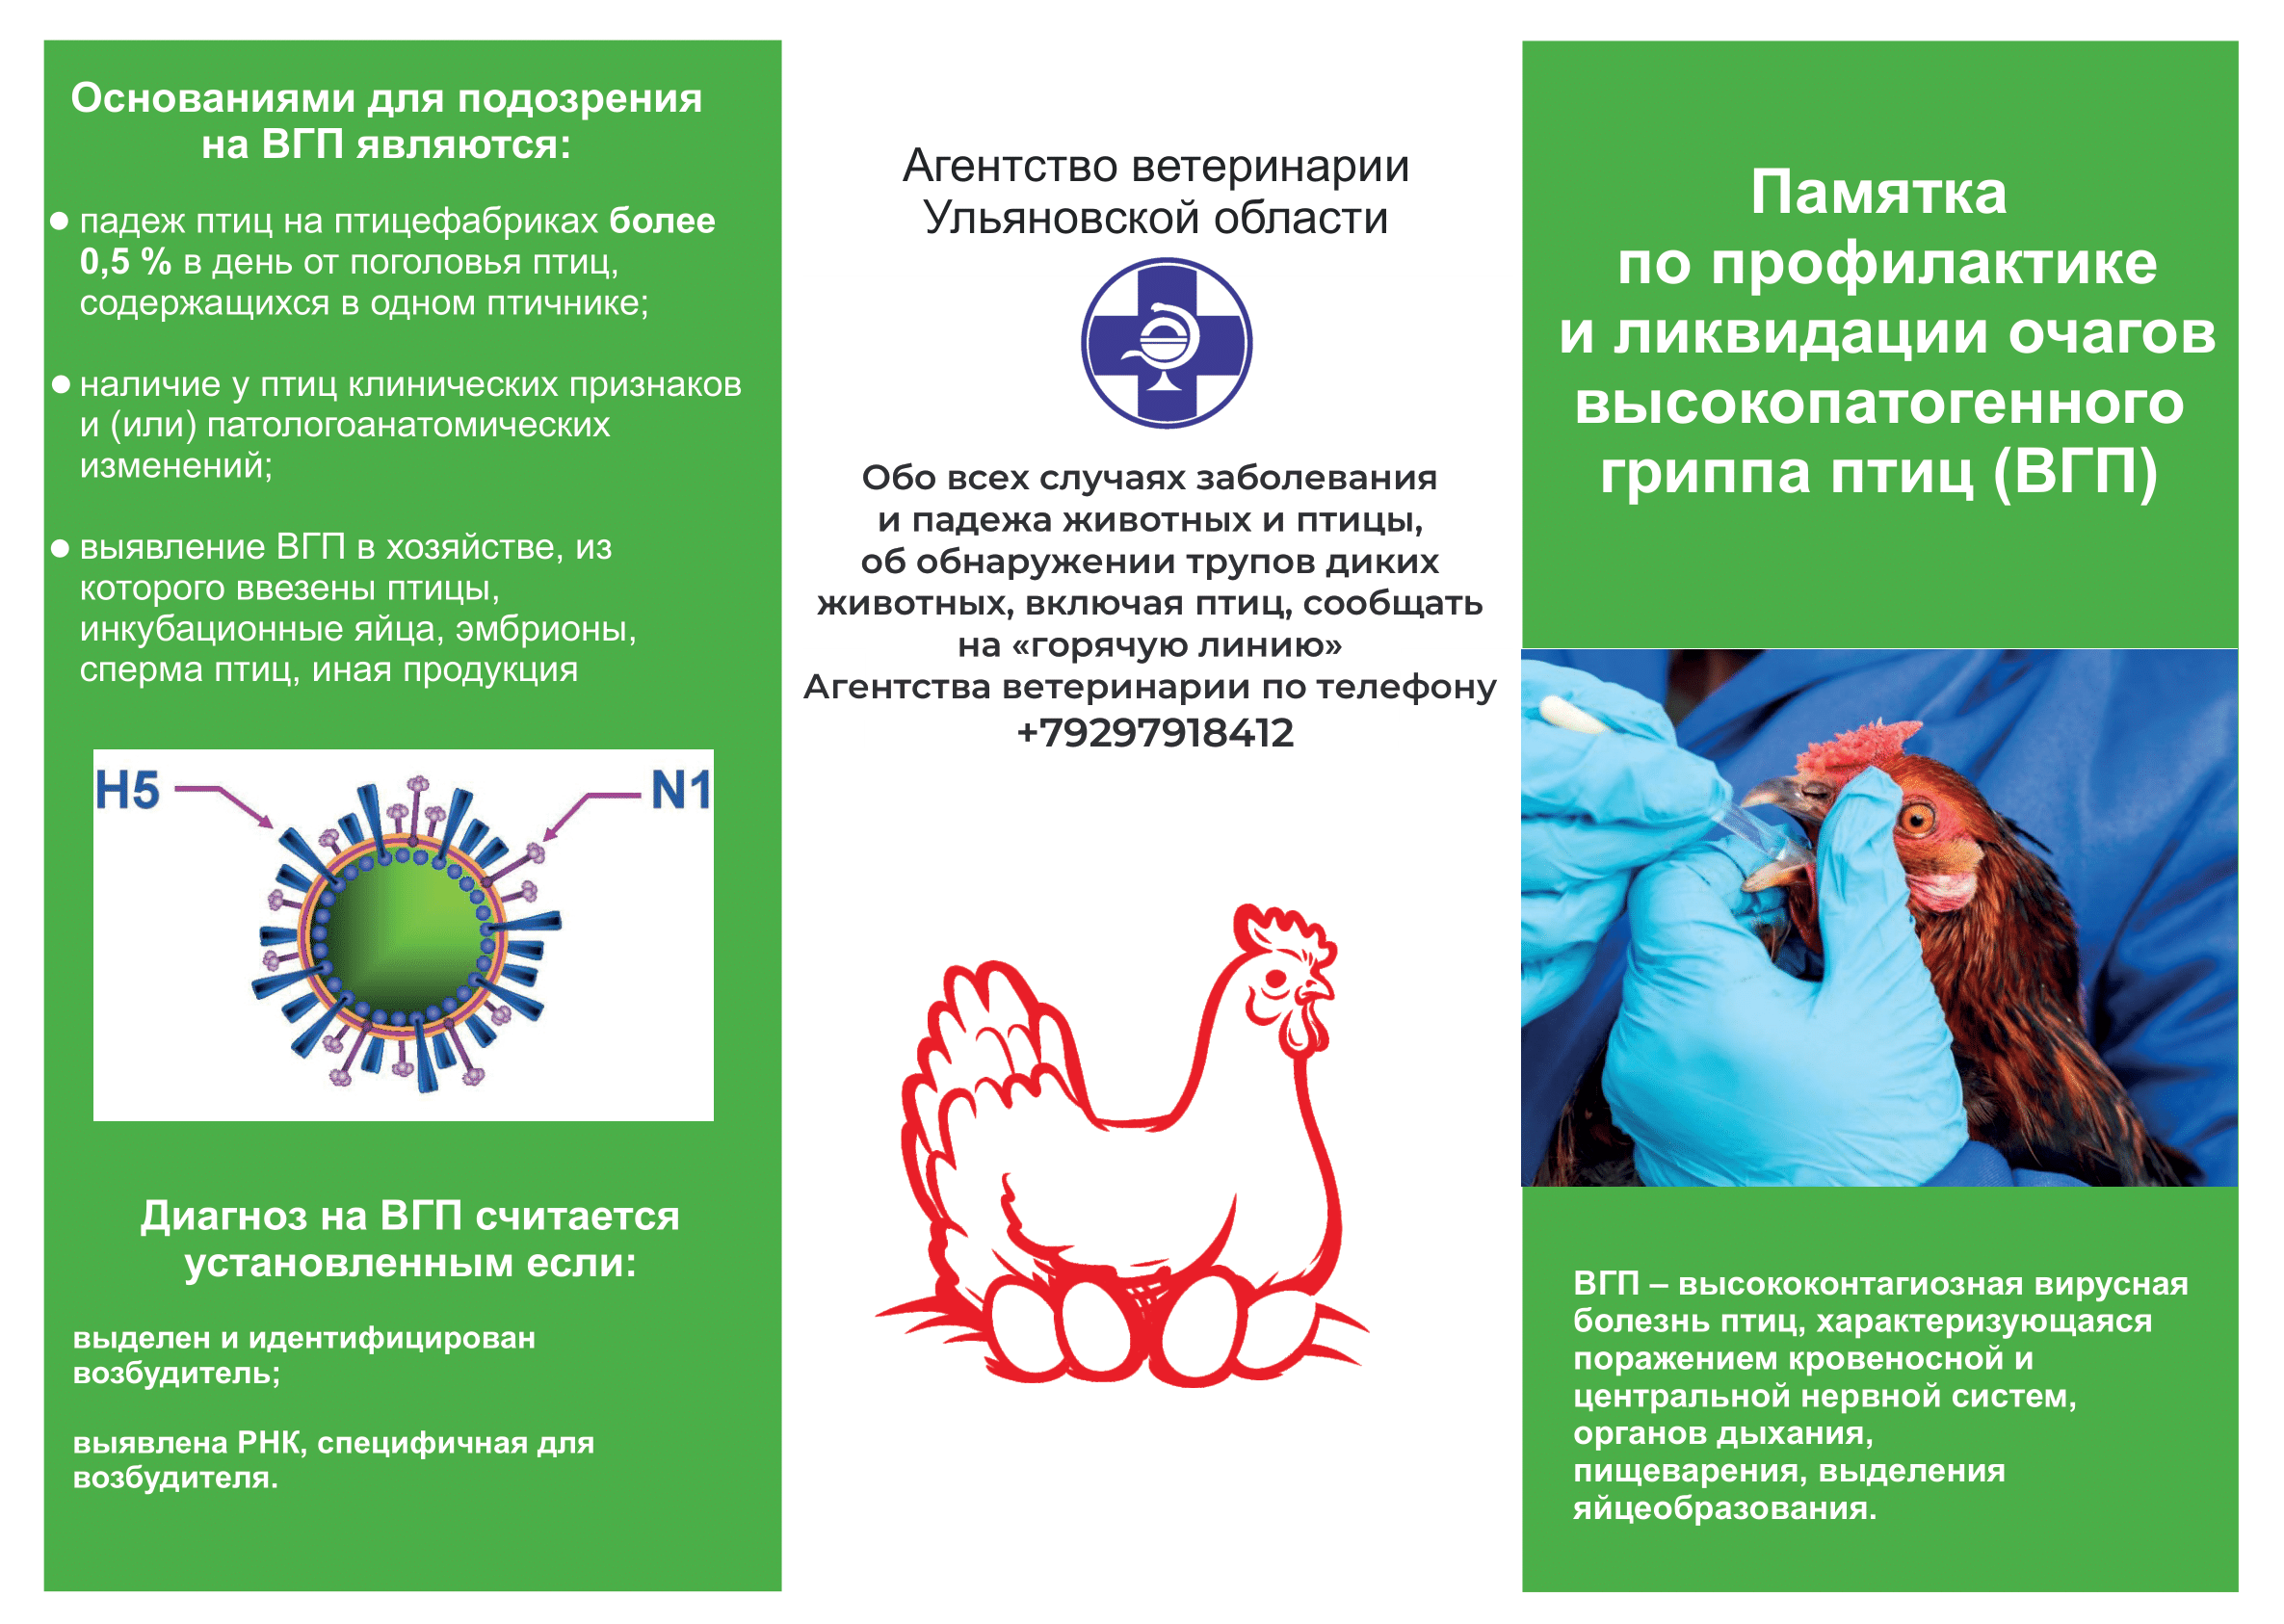 Информирование о сложной эпизоотической ситуации по высокопатогенному гриппу птиц.